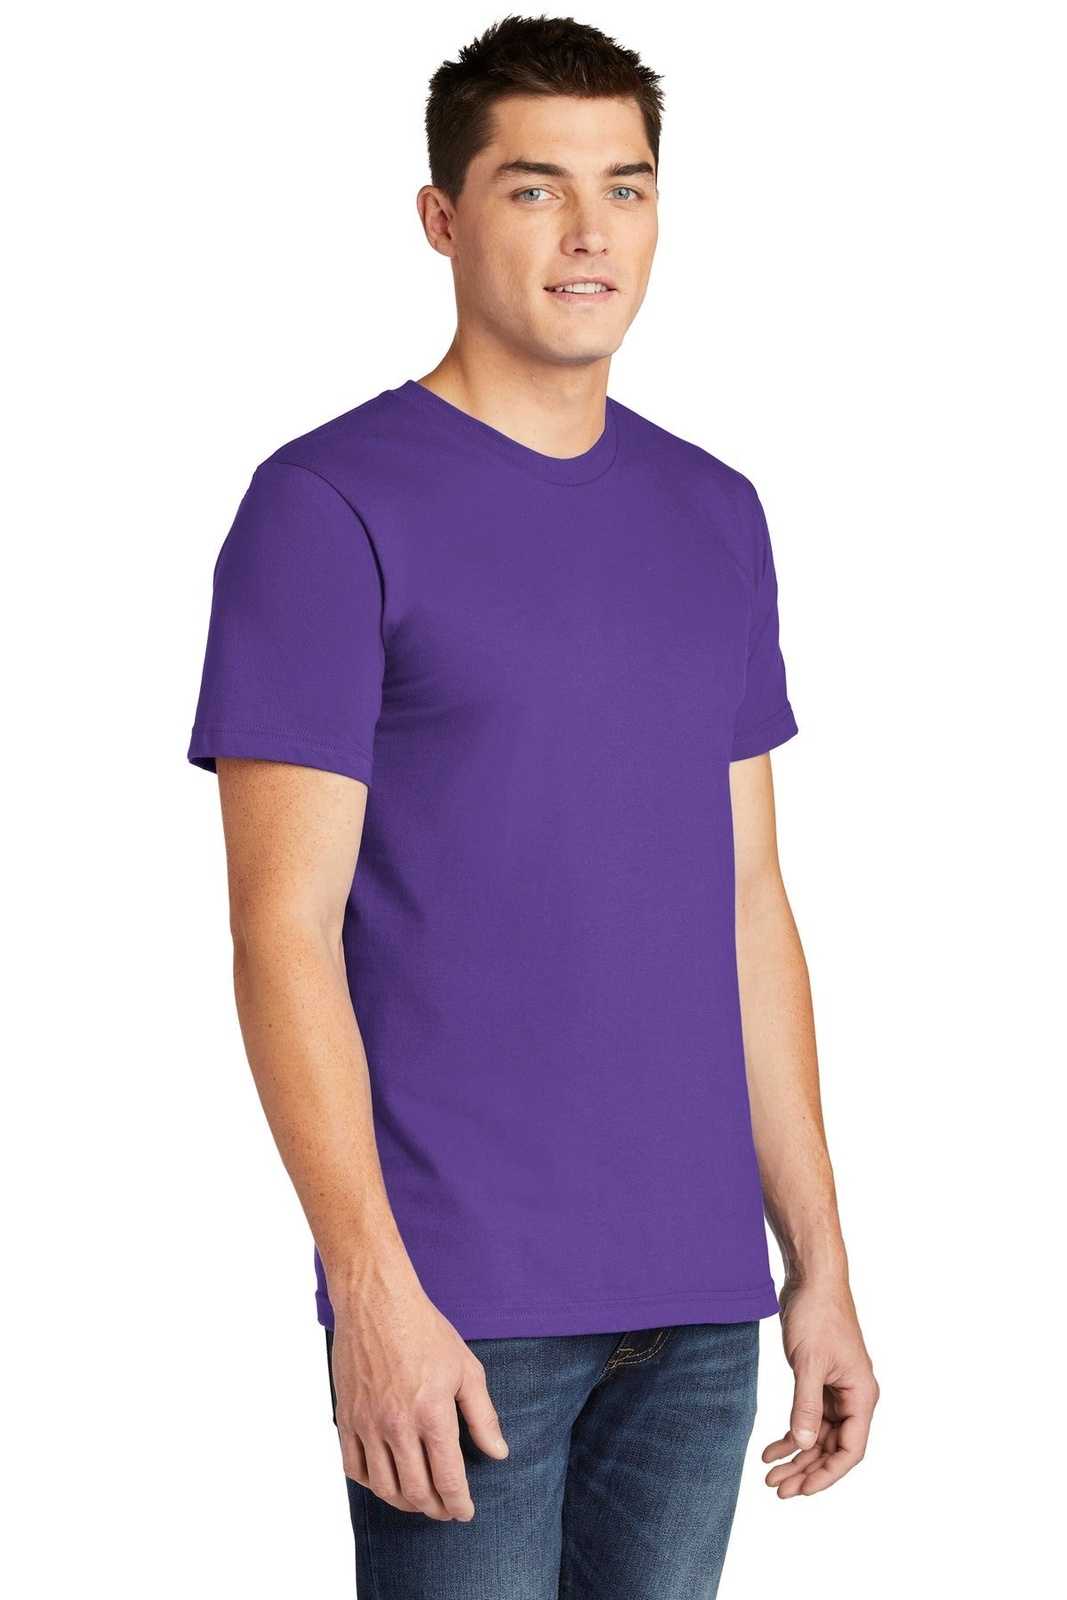 American Apparel 2001W Fine Jersey T-Shirt - Purple - HIT a Double